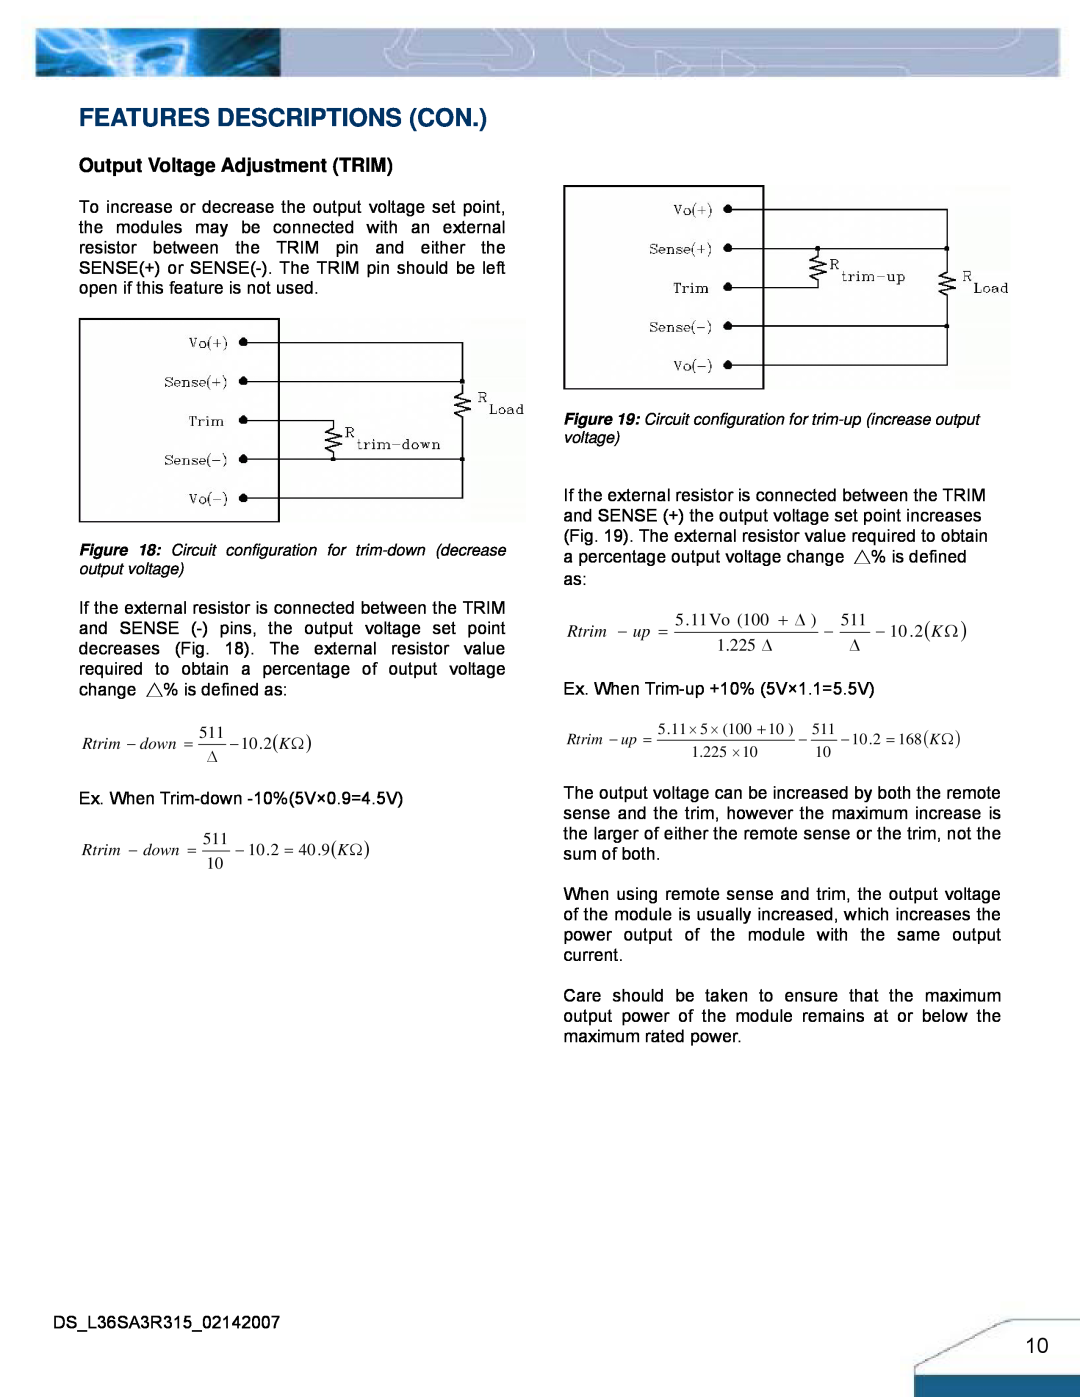 Delta Electronics Series L36SA Features Descriptions Con, Output Voltage Adjustment TRIM, Rtrim − down = 511∆ − 10.2KΩ 